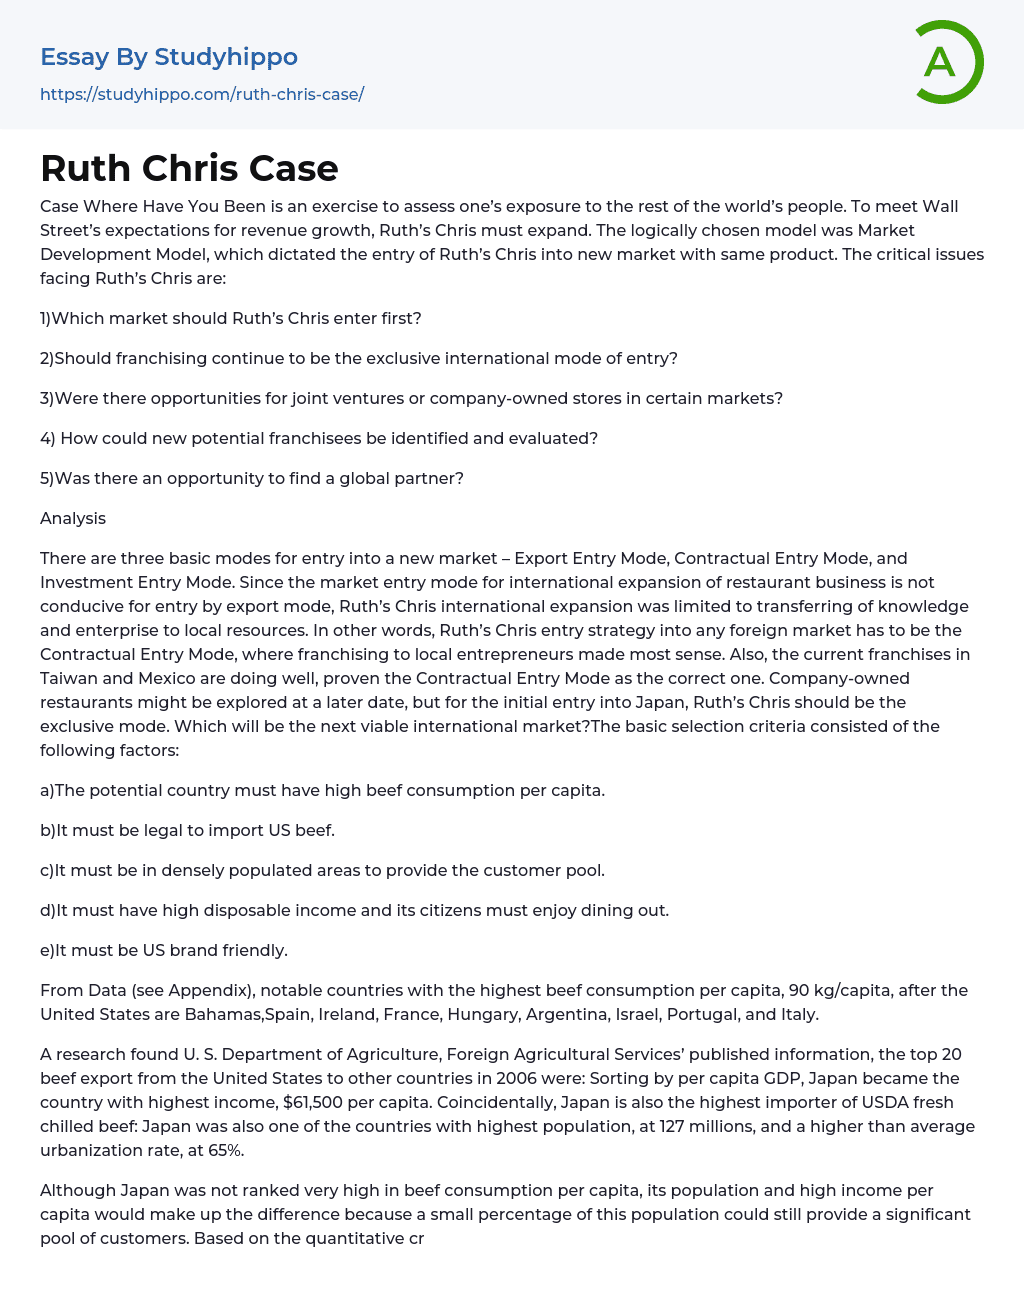 Ruth Chris Case Essay Example